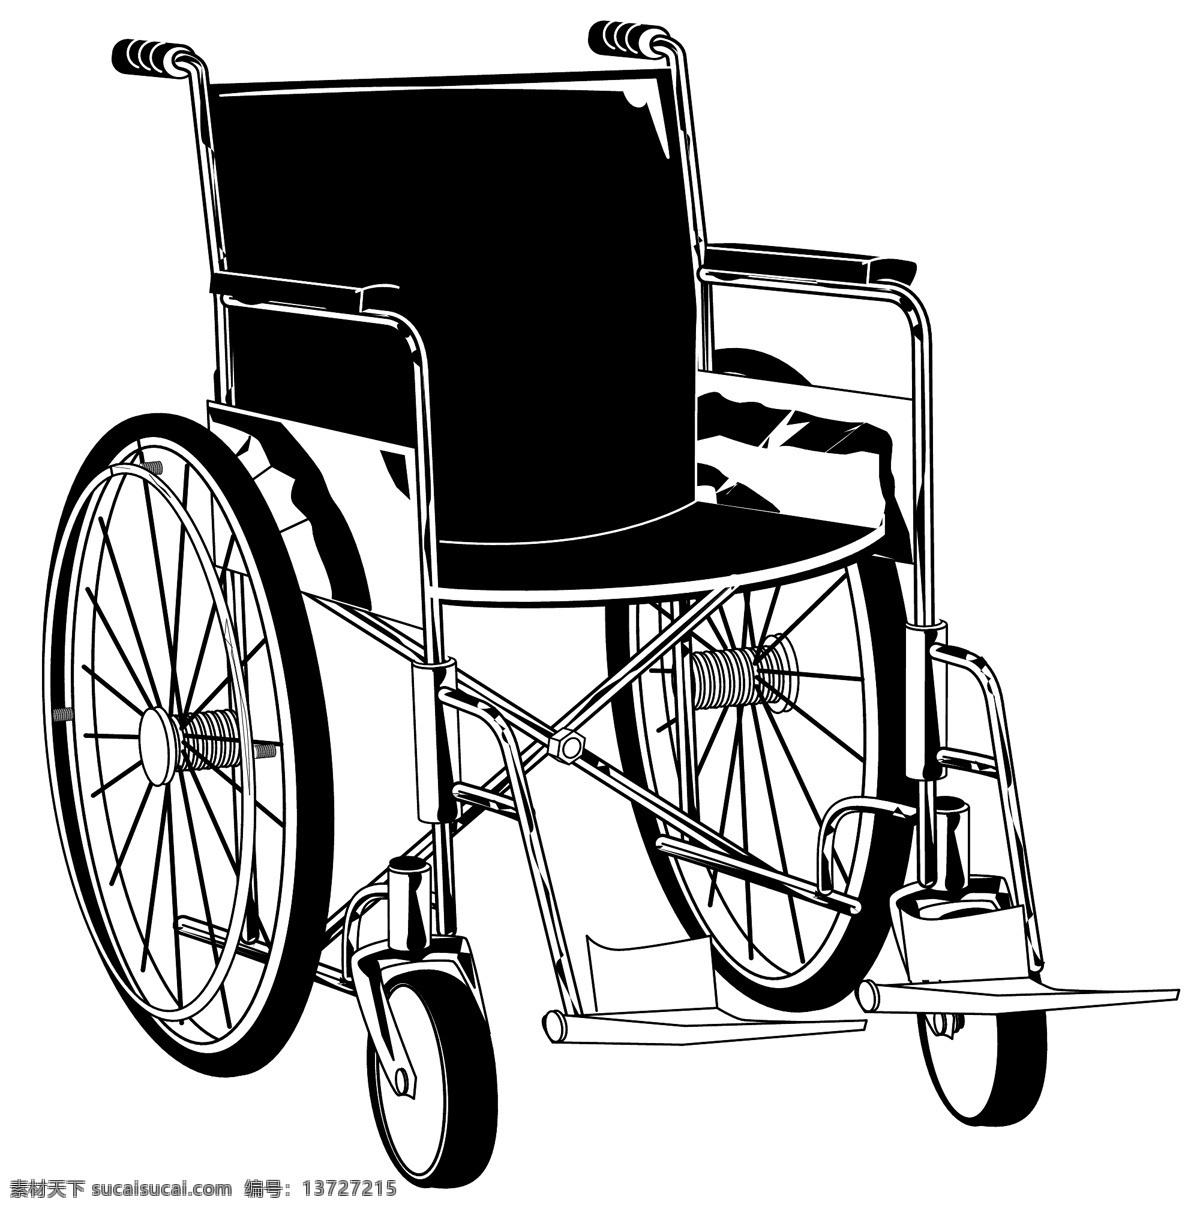 轮椅 医疗器材 矢量素材 eps0006 设计素材 医疗卫生 矢量图库 白色